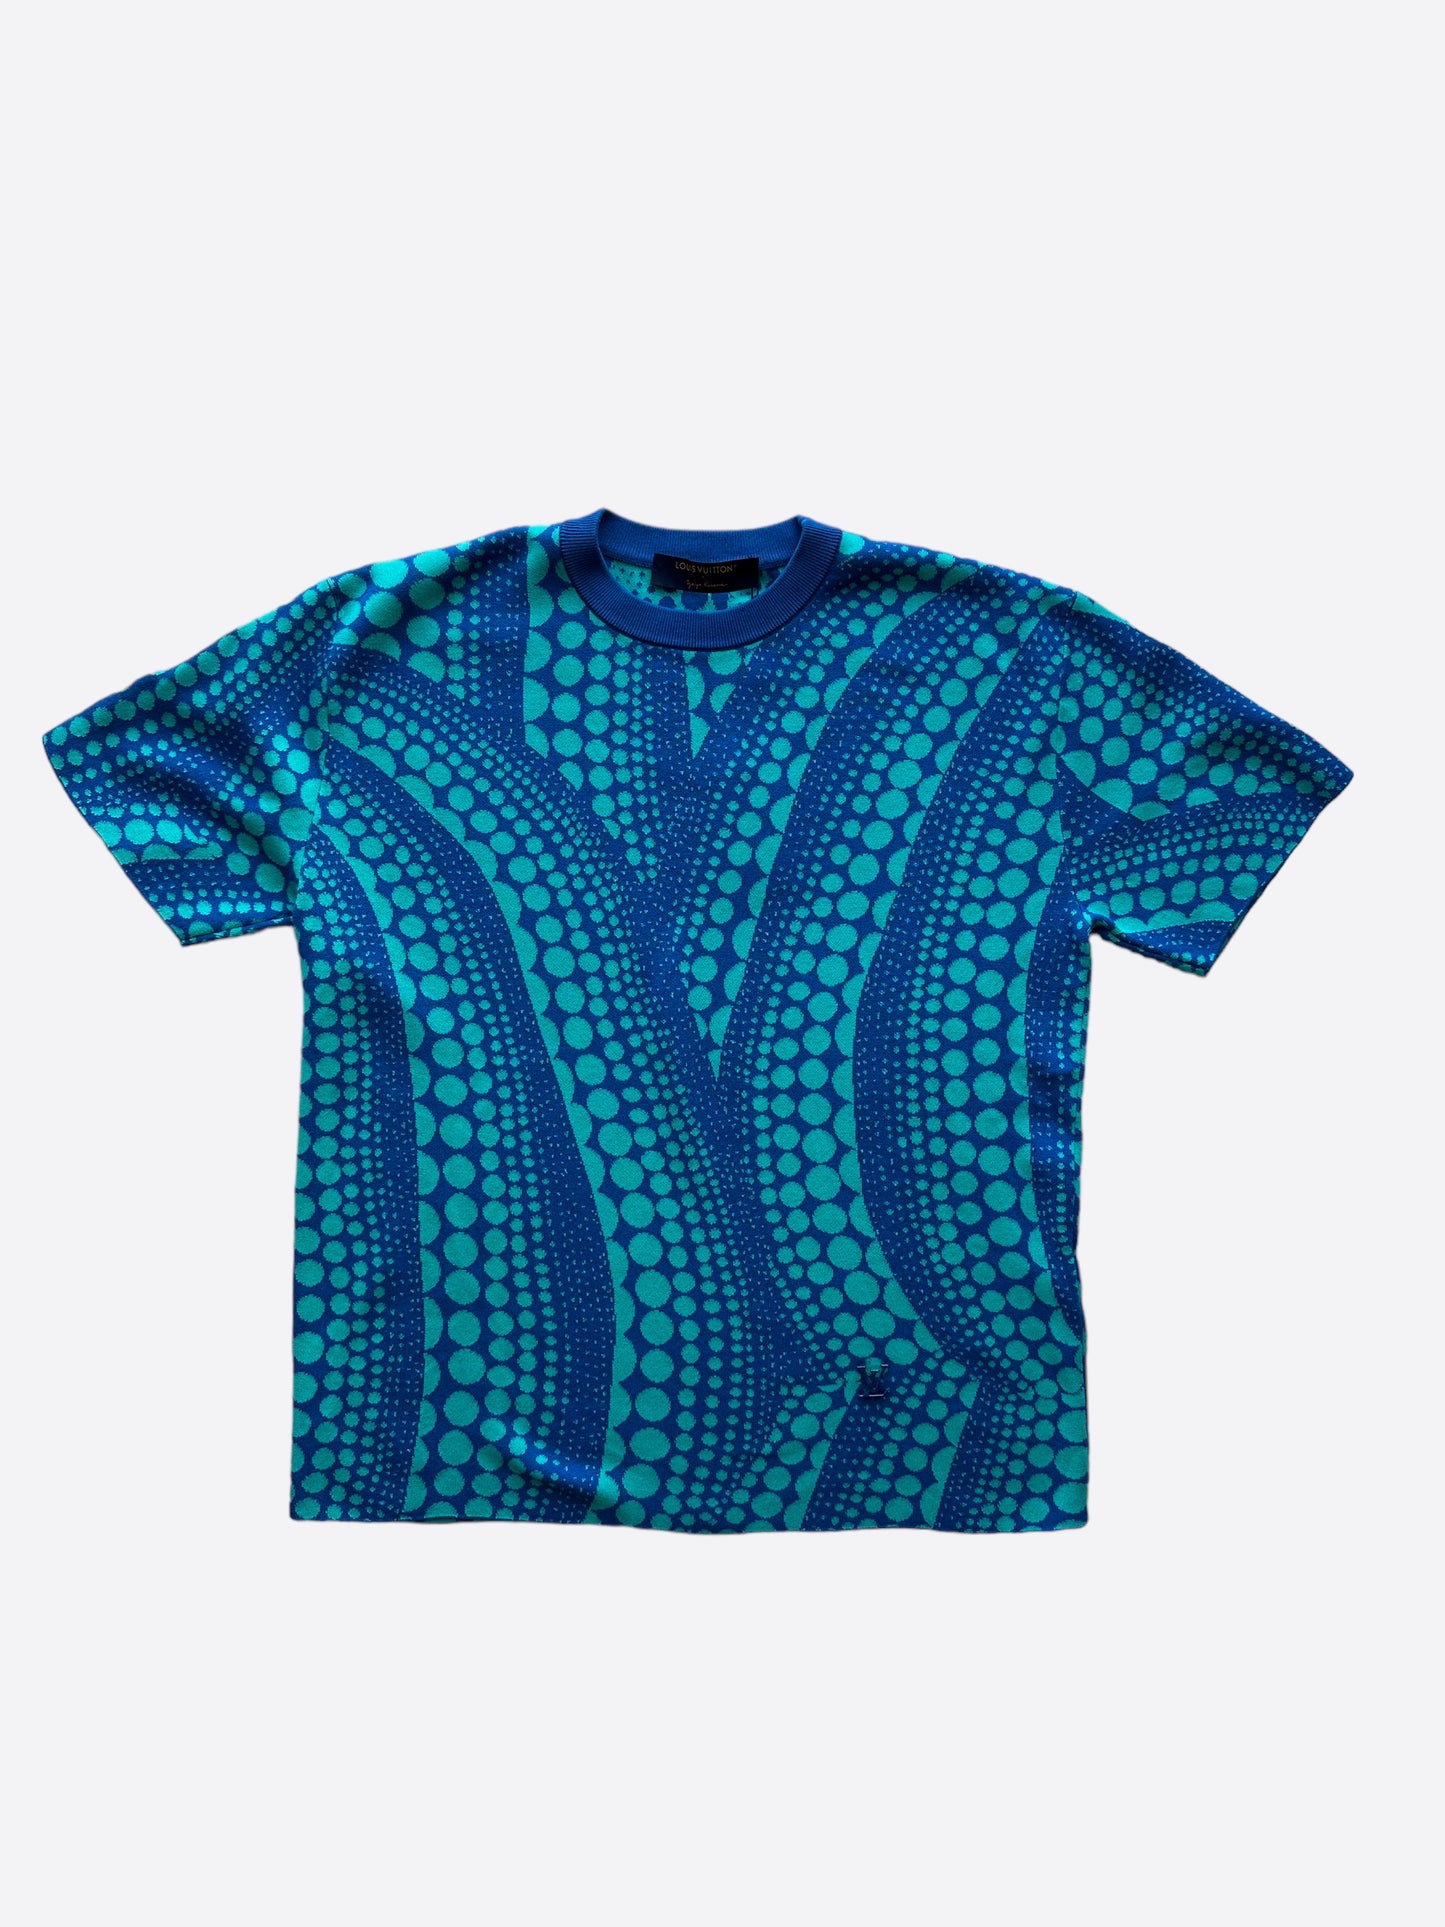 Louis Vuitton Floral Hawaiian Shirt – Savonches